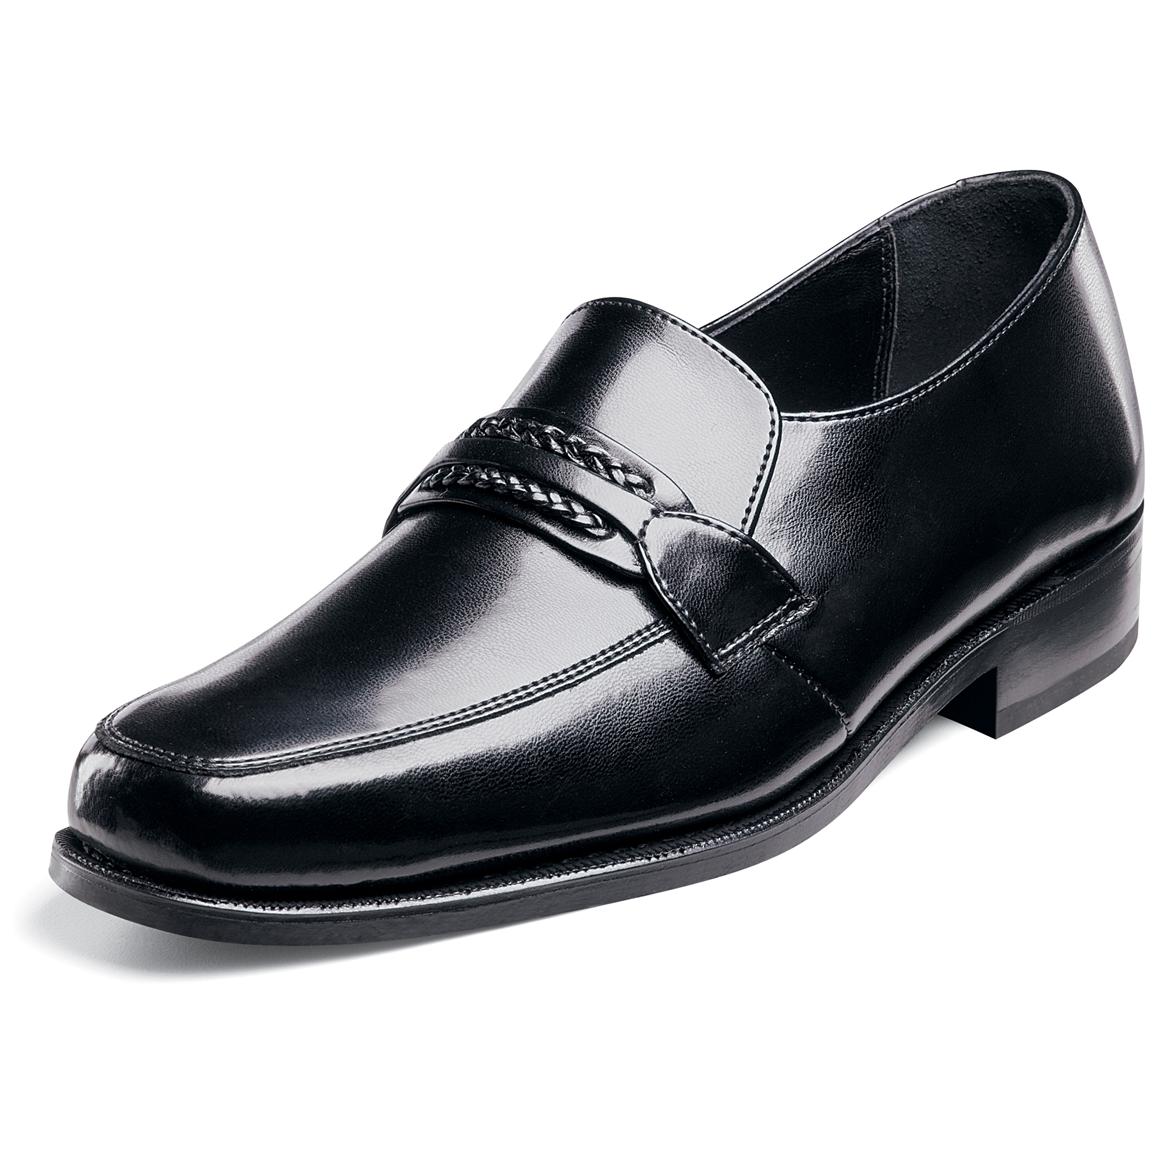 Men's Florsheim® Richfield Shoes - 185728, Dress Shoes at Sportsman's Guide